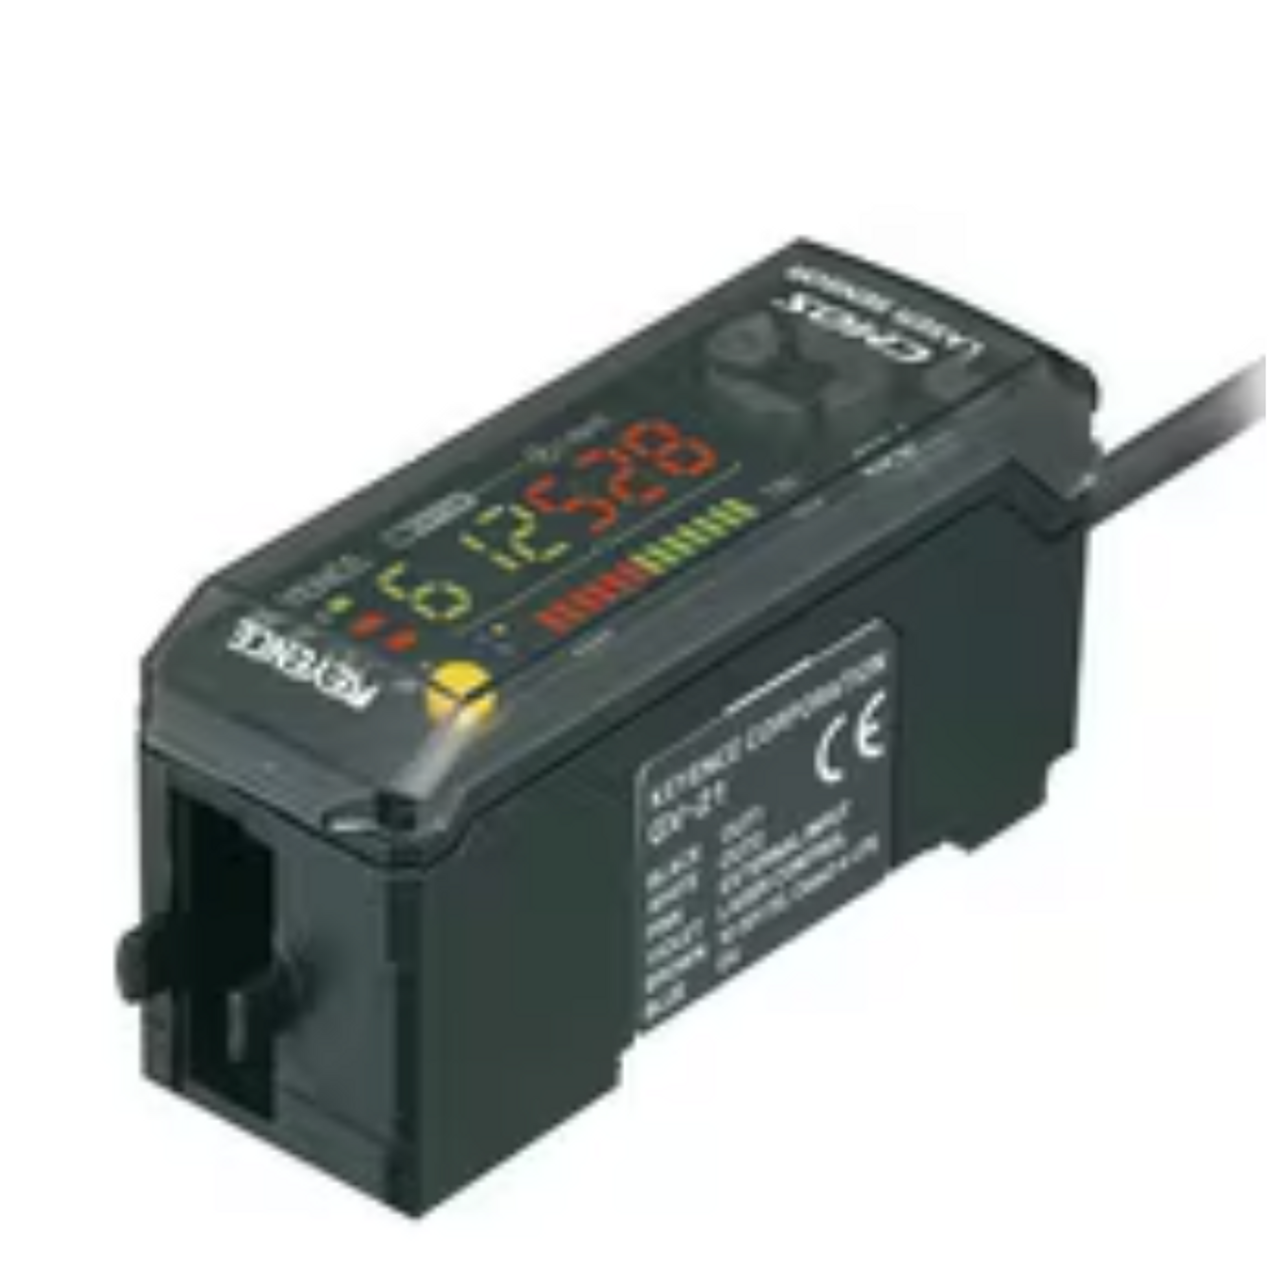 Keyence GV-21 Digital CMOS Laser Sensor, Amplifier Unit, Main Unit, NPN [New]